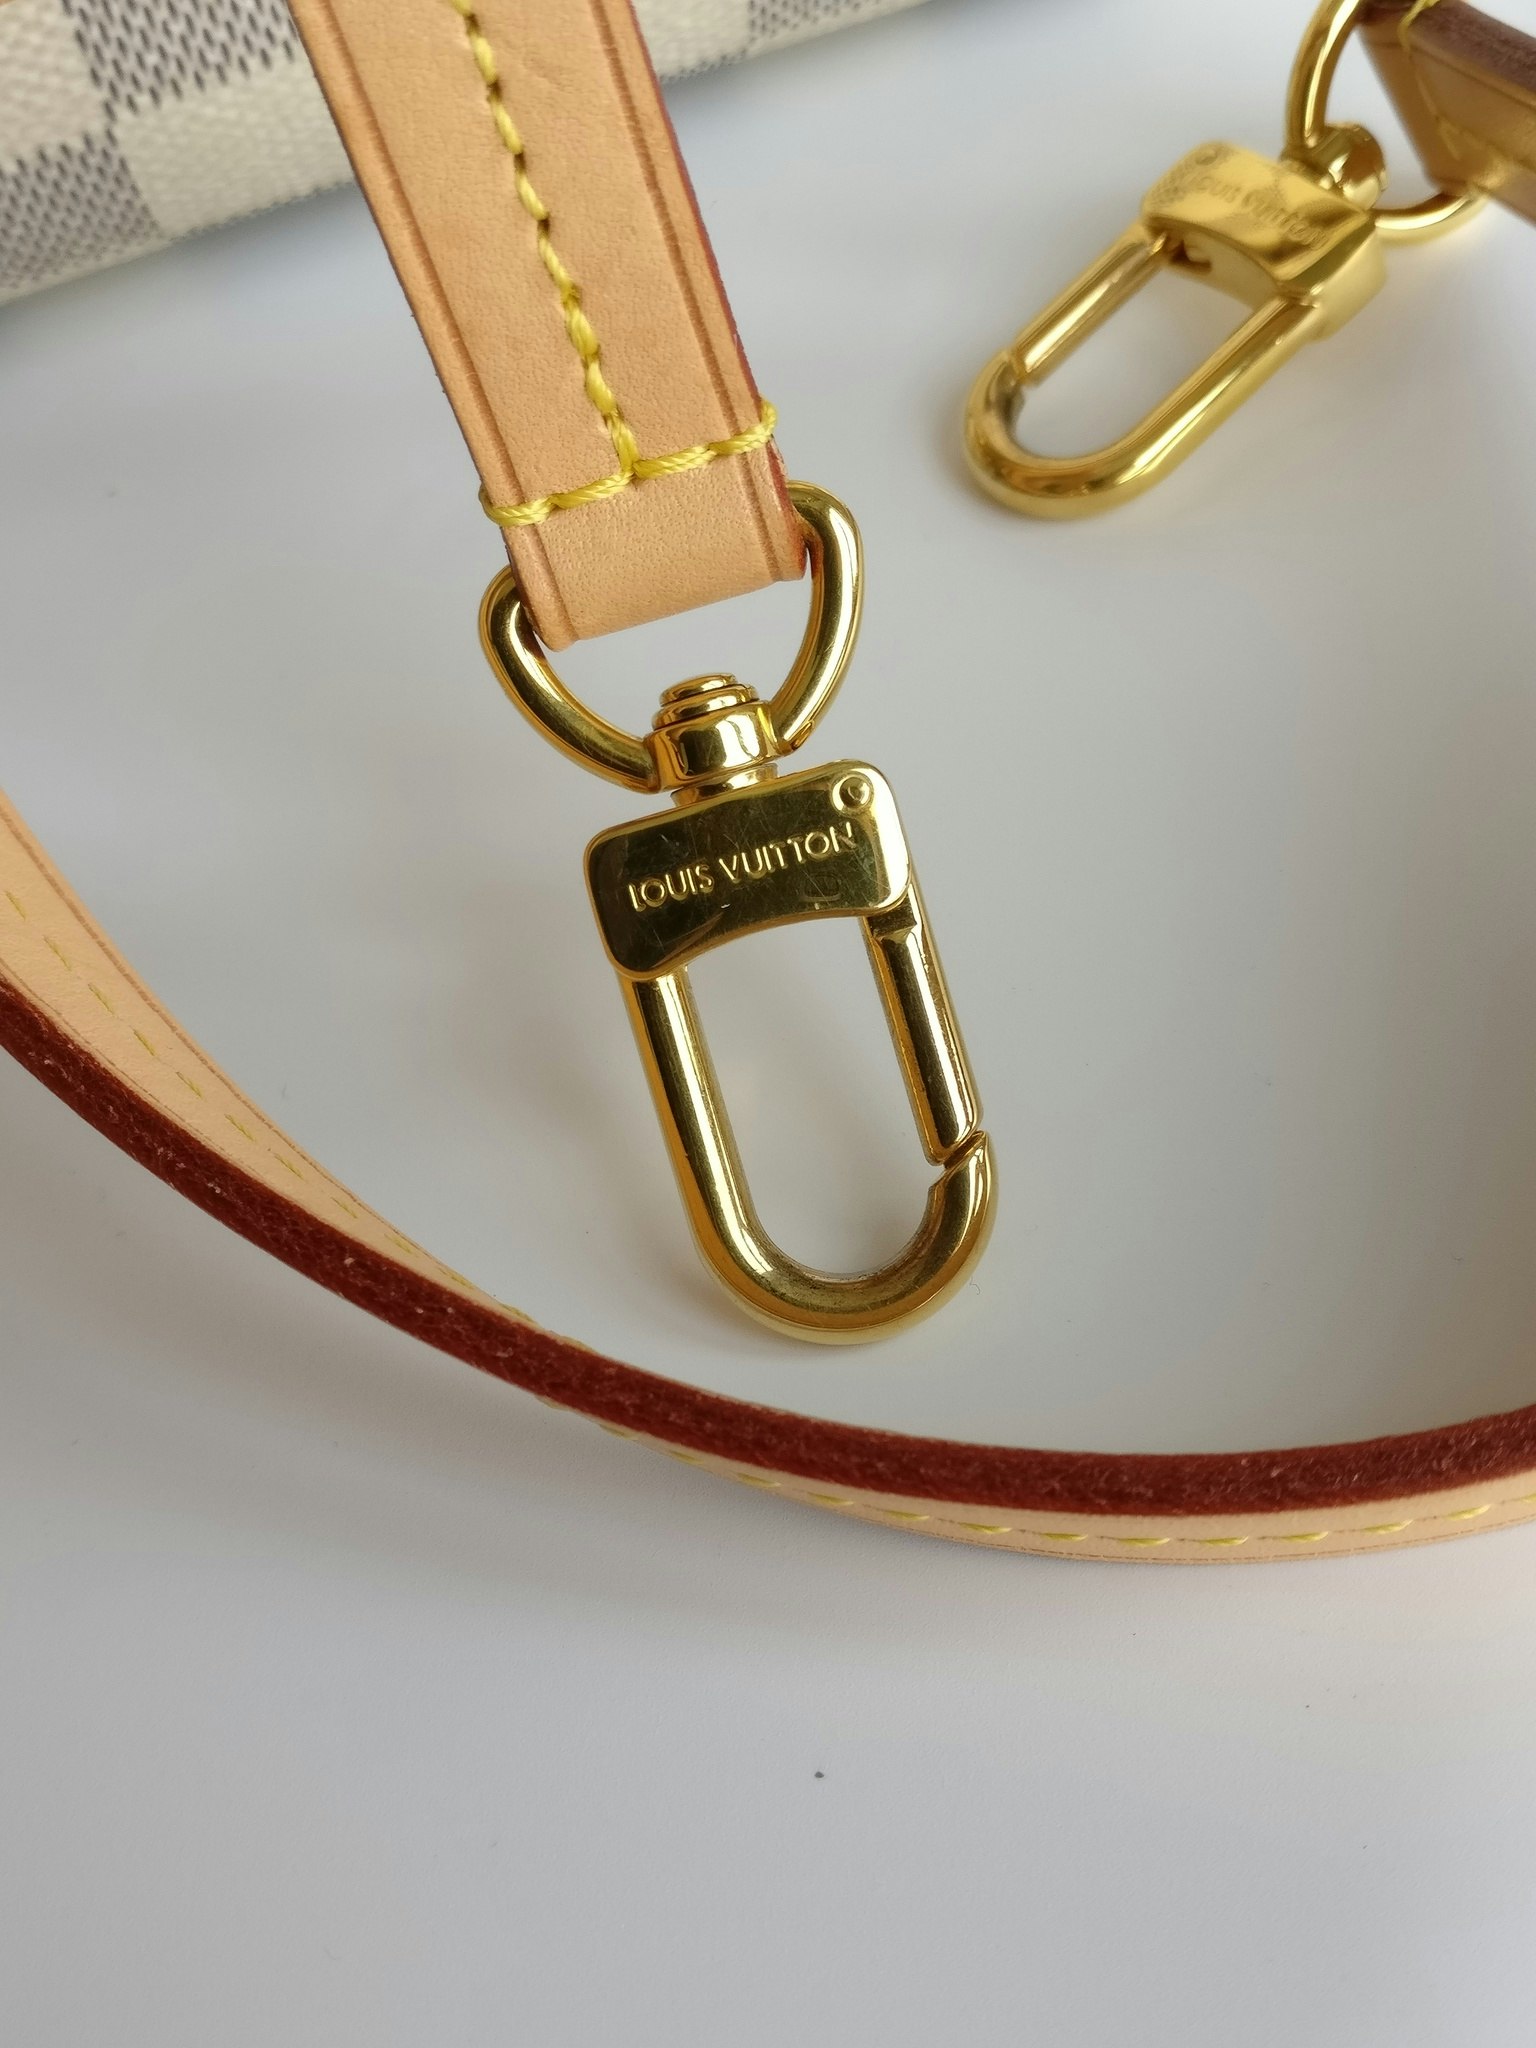 Louis Vuitton Croisette damier azur - Good or Bag